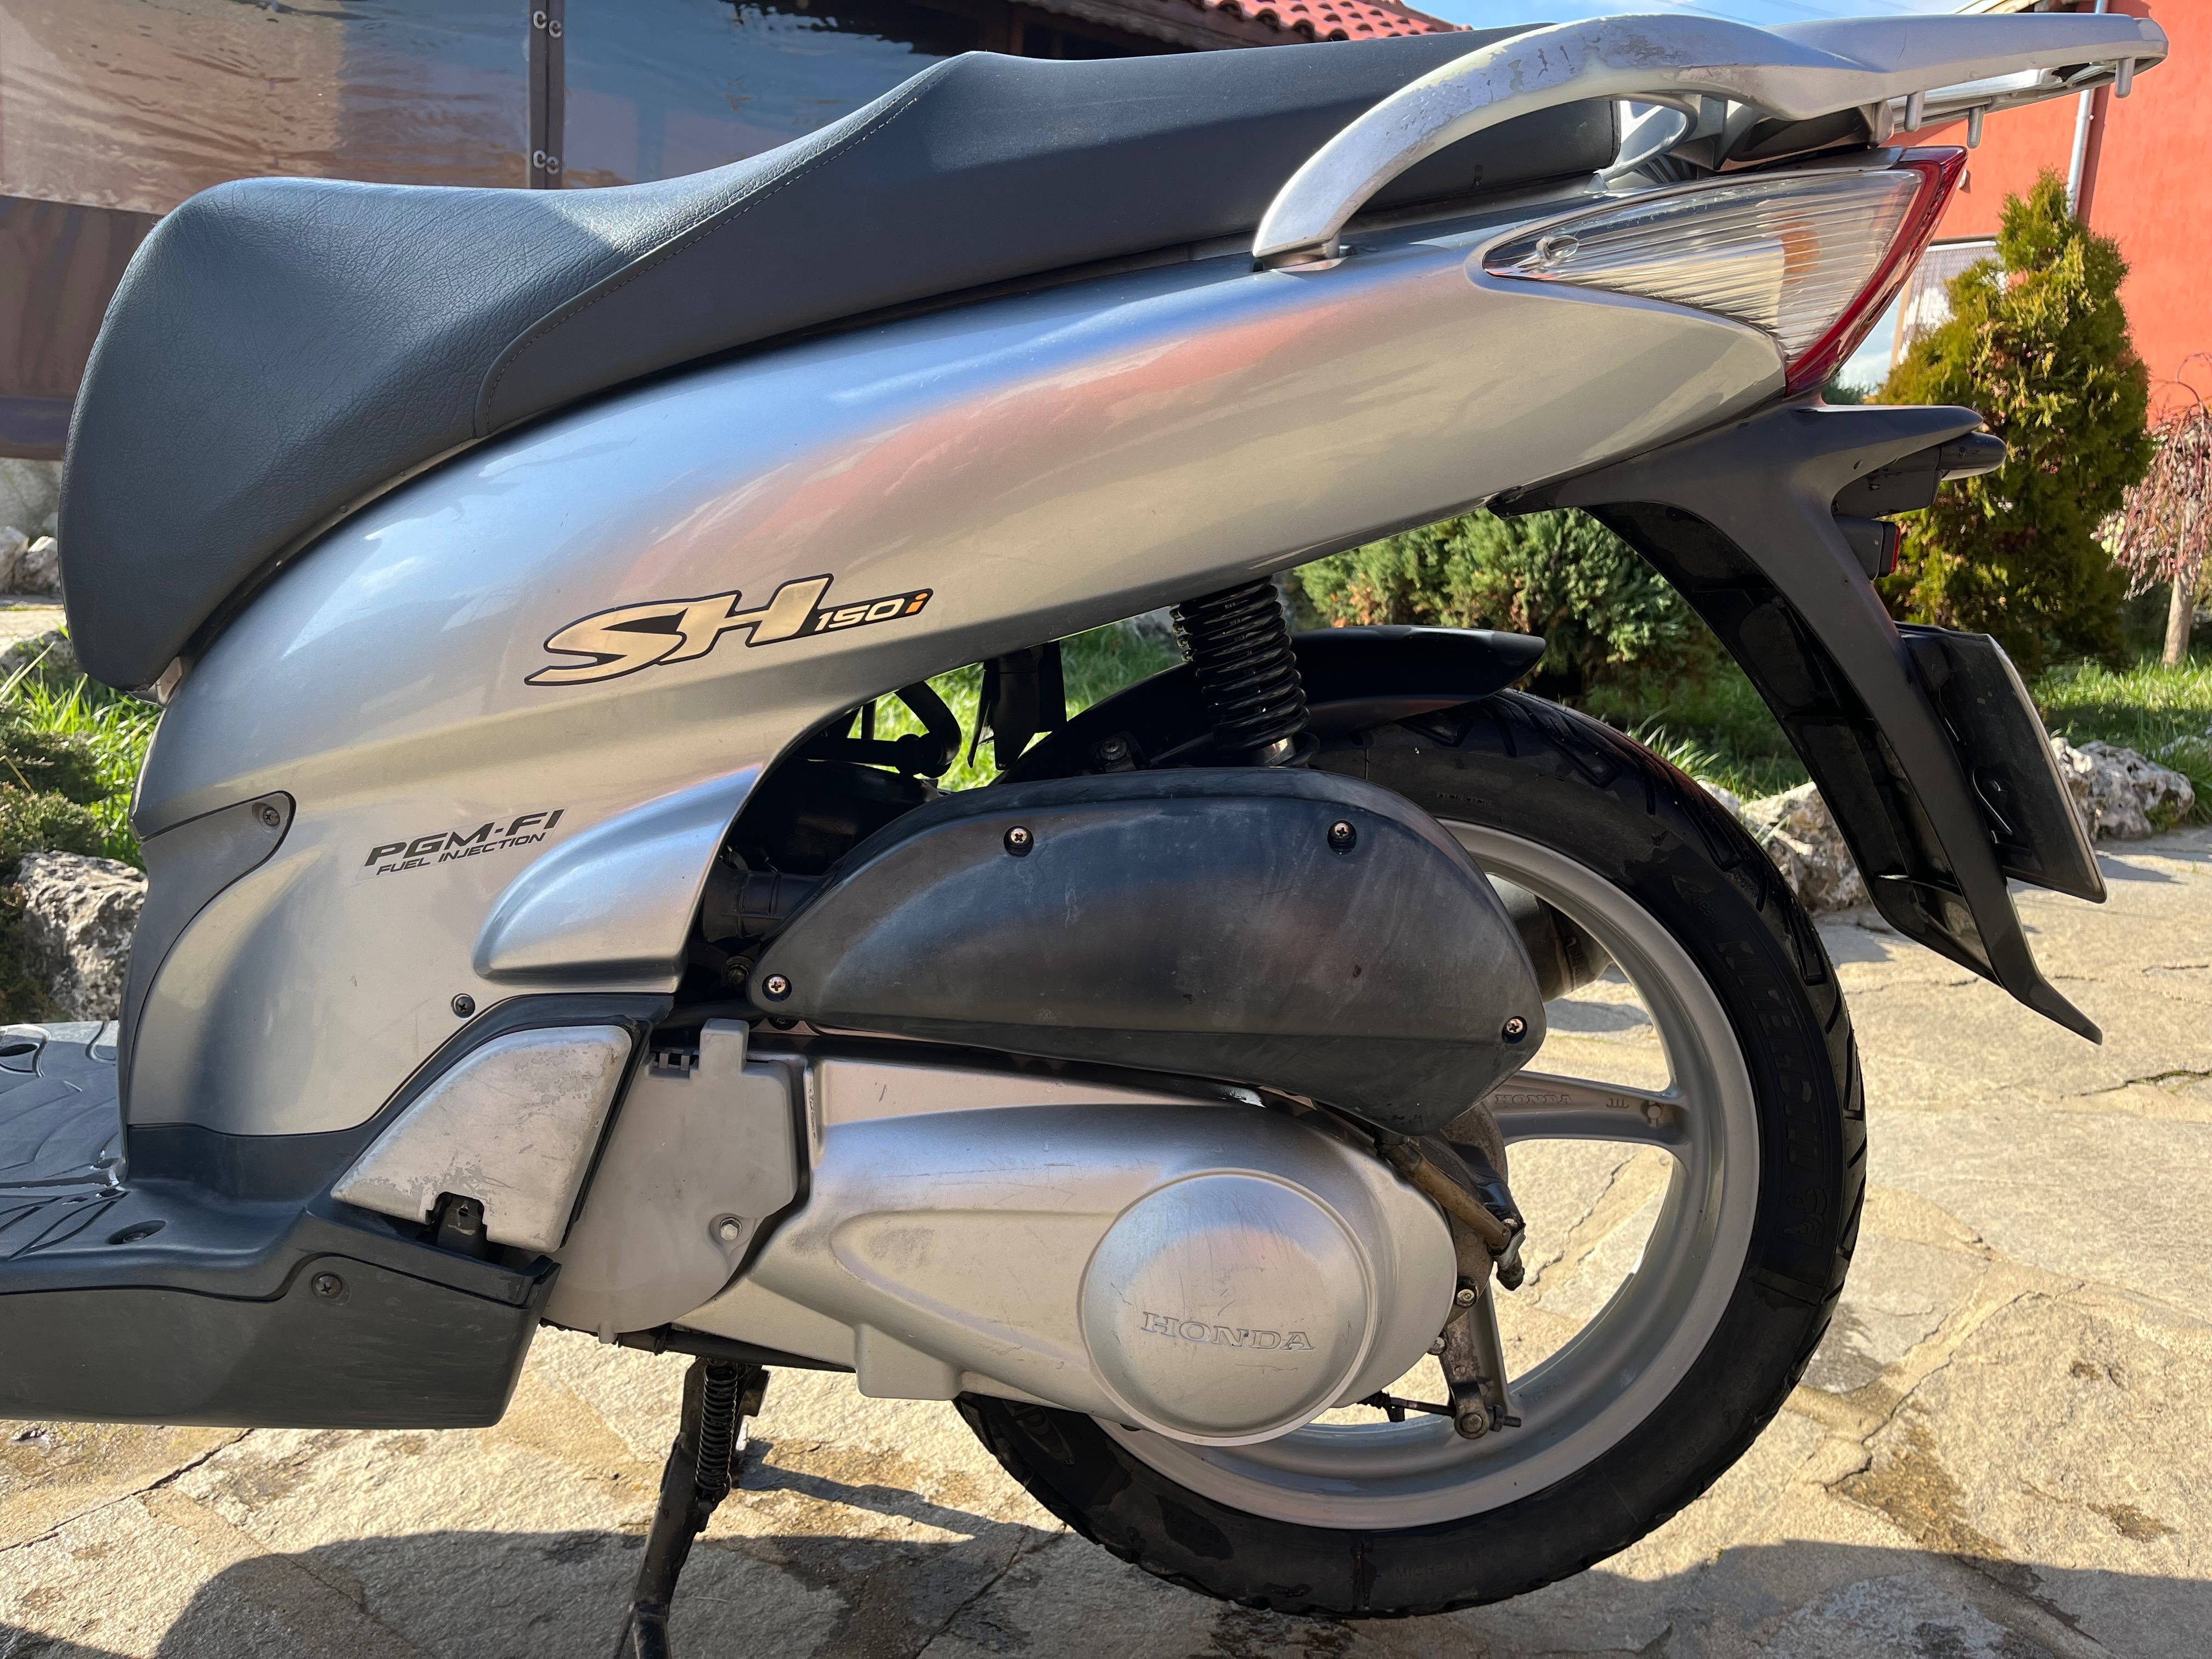 Скутер Honda sh 150i в перфектно състояние с всички нужни документи